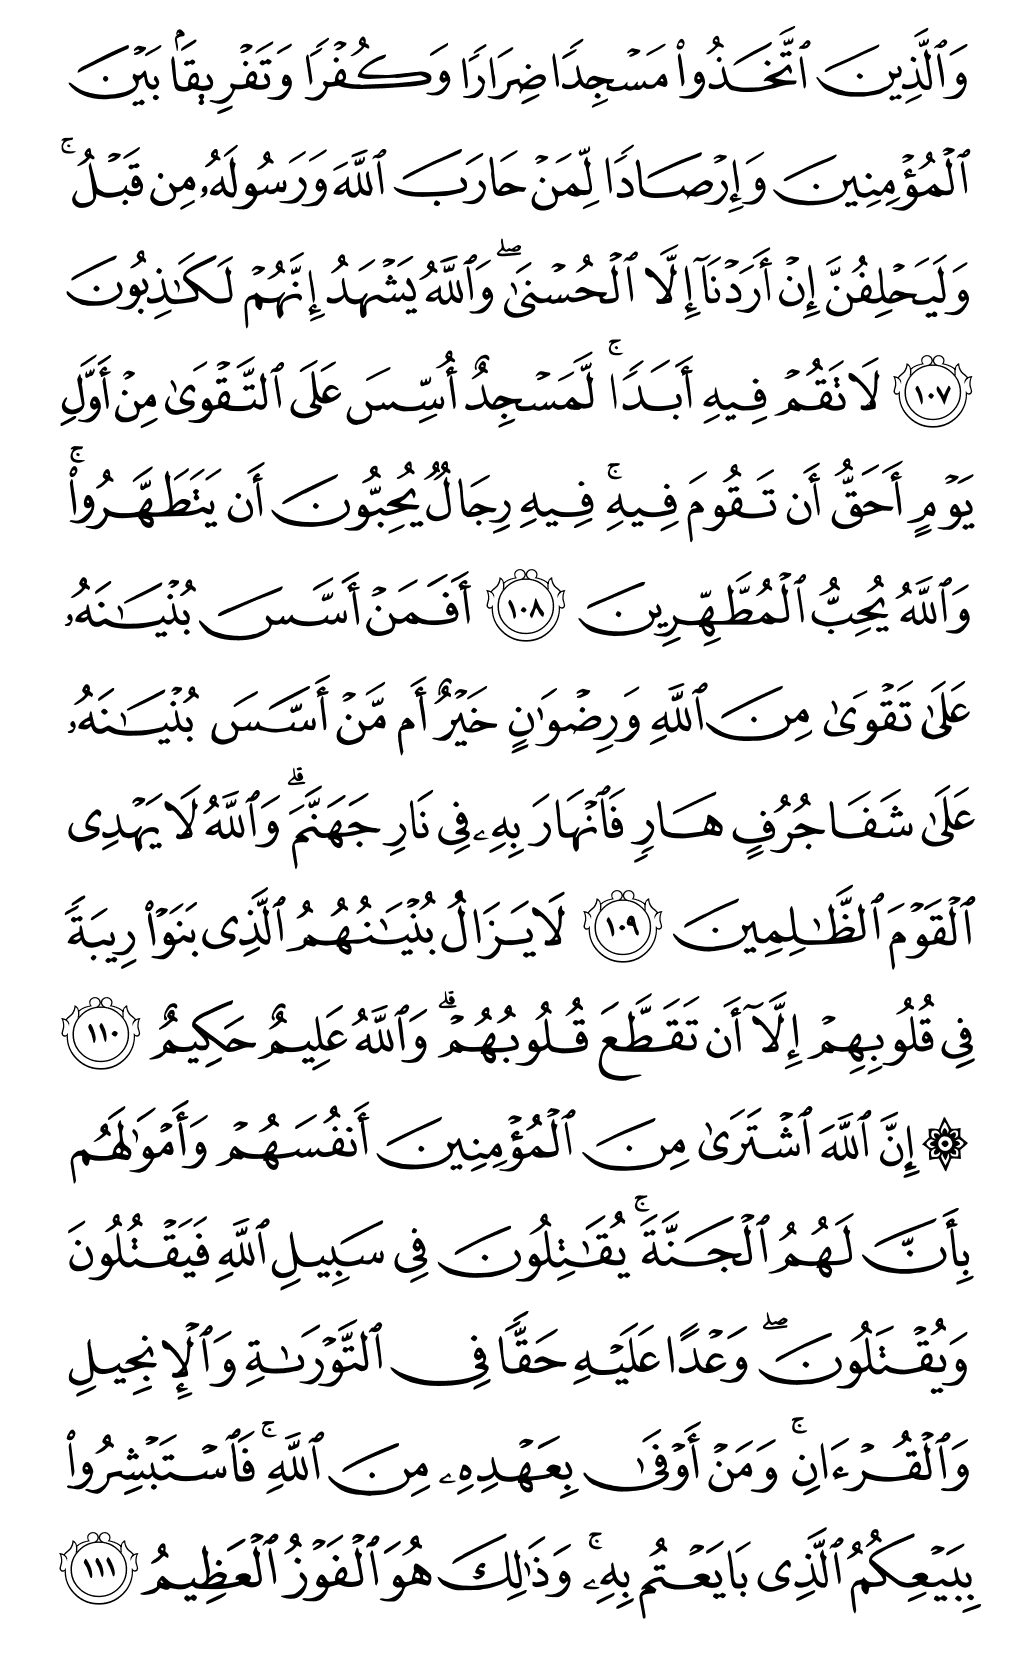 الصفحة رقم 204 من القرآن الكريم